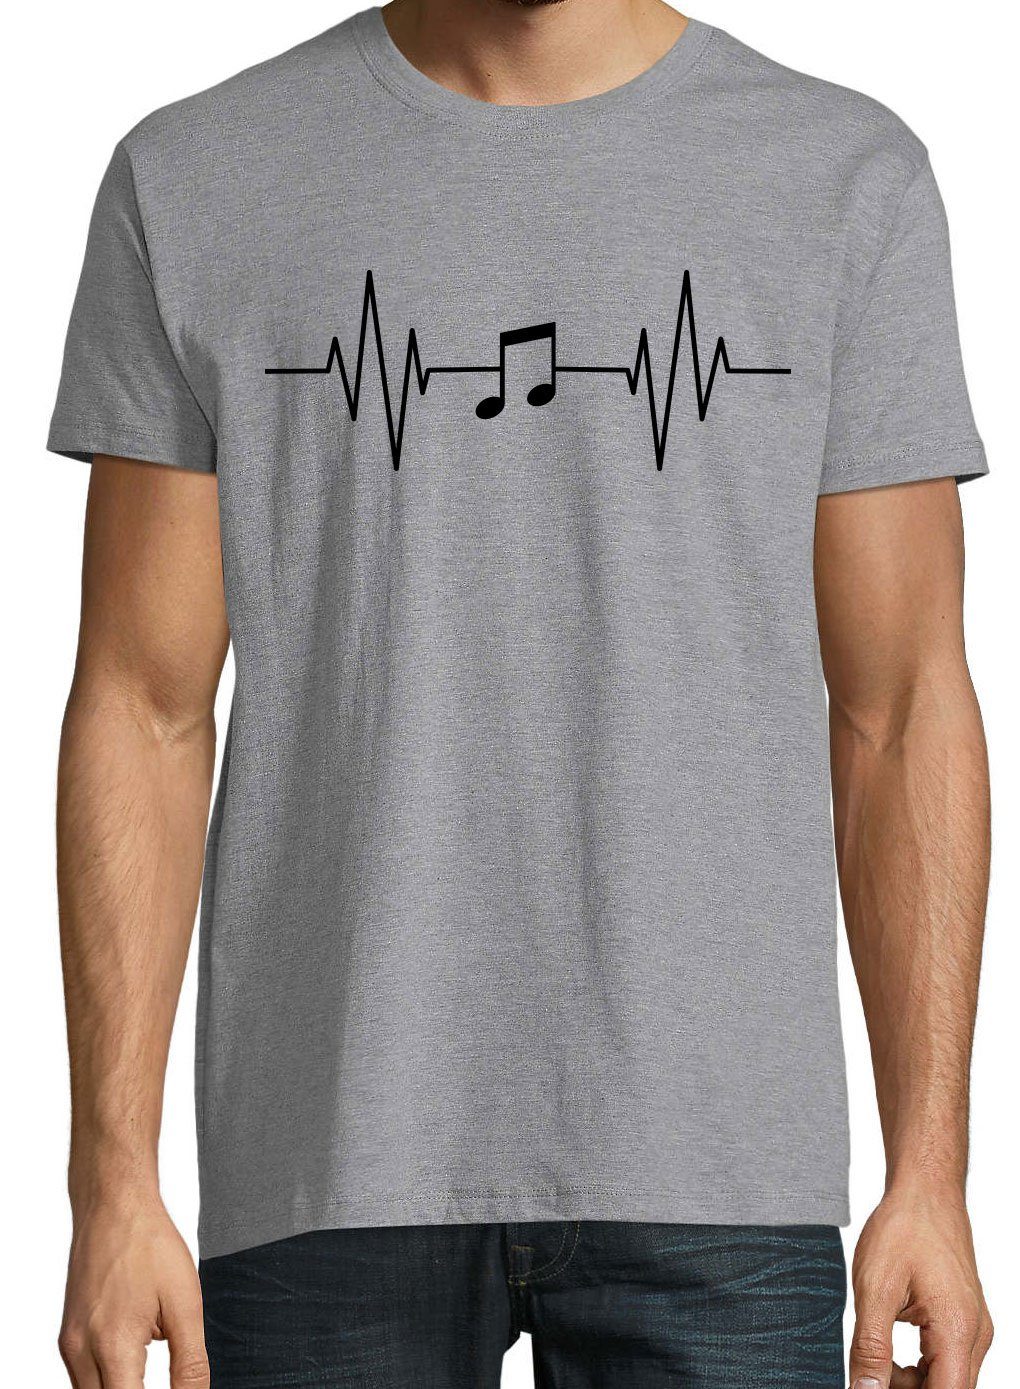 Herren Note Frontprint Designz Youth Music T-Shirt Shirt Grau Heartbeat Musik mit